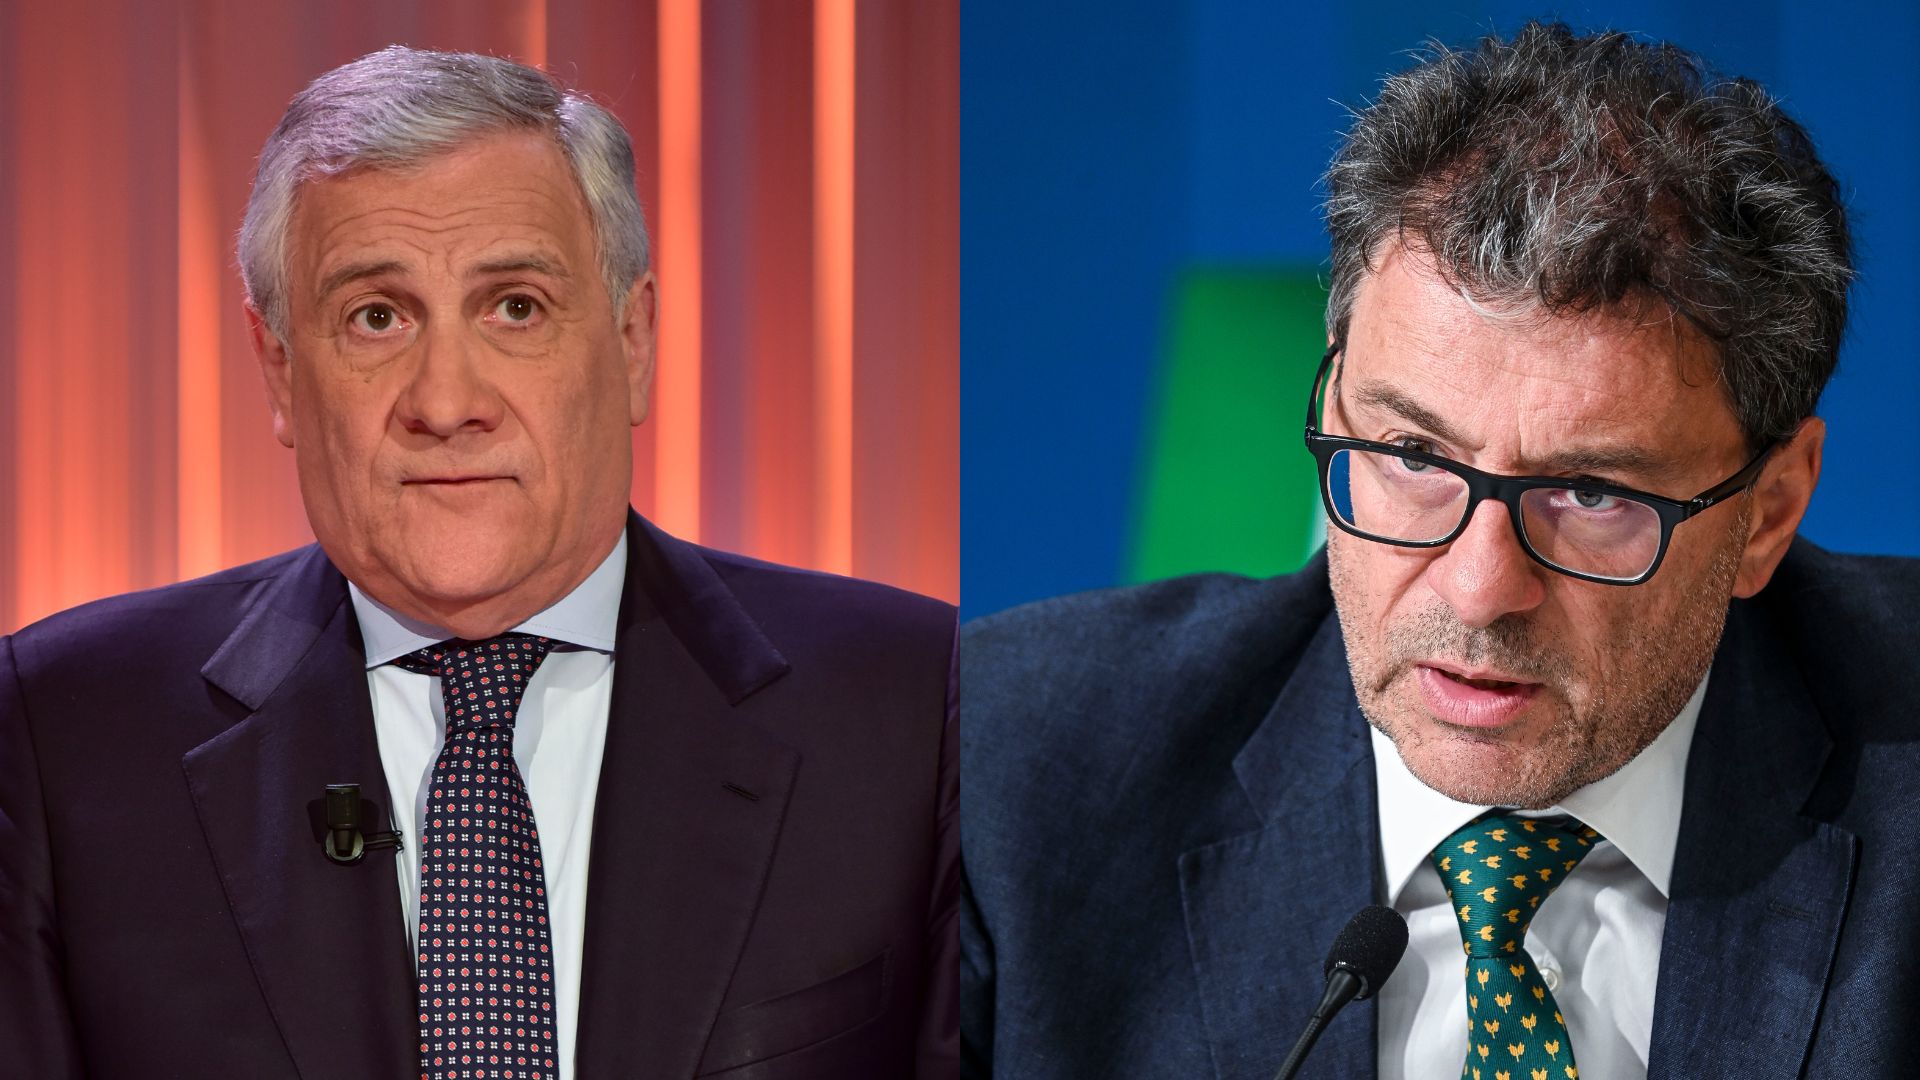 Superbonus, Tajani critica ma Giorgetti punge: “Io non parlo delle nostre missioni internazionali”